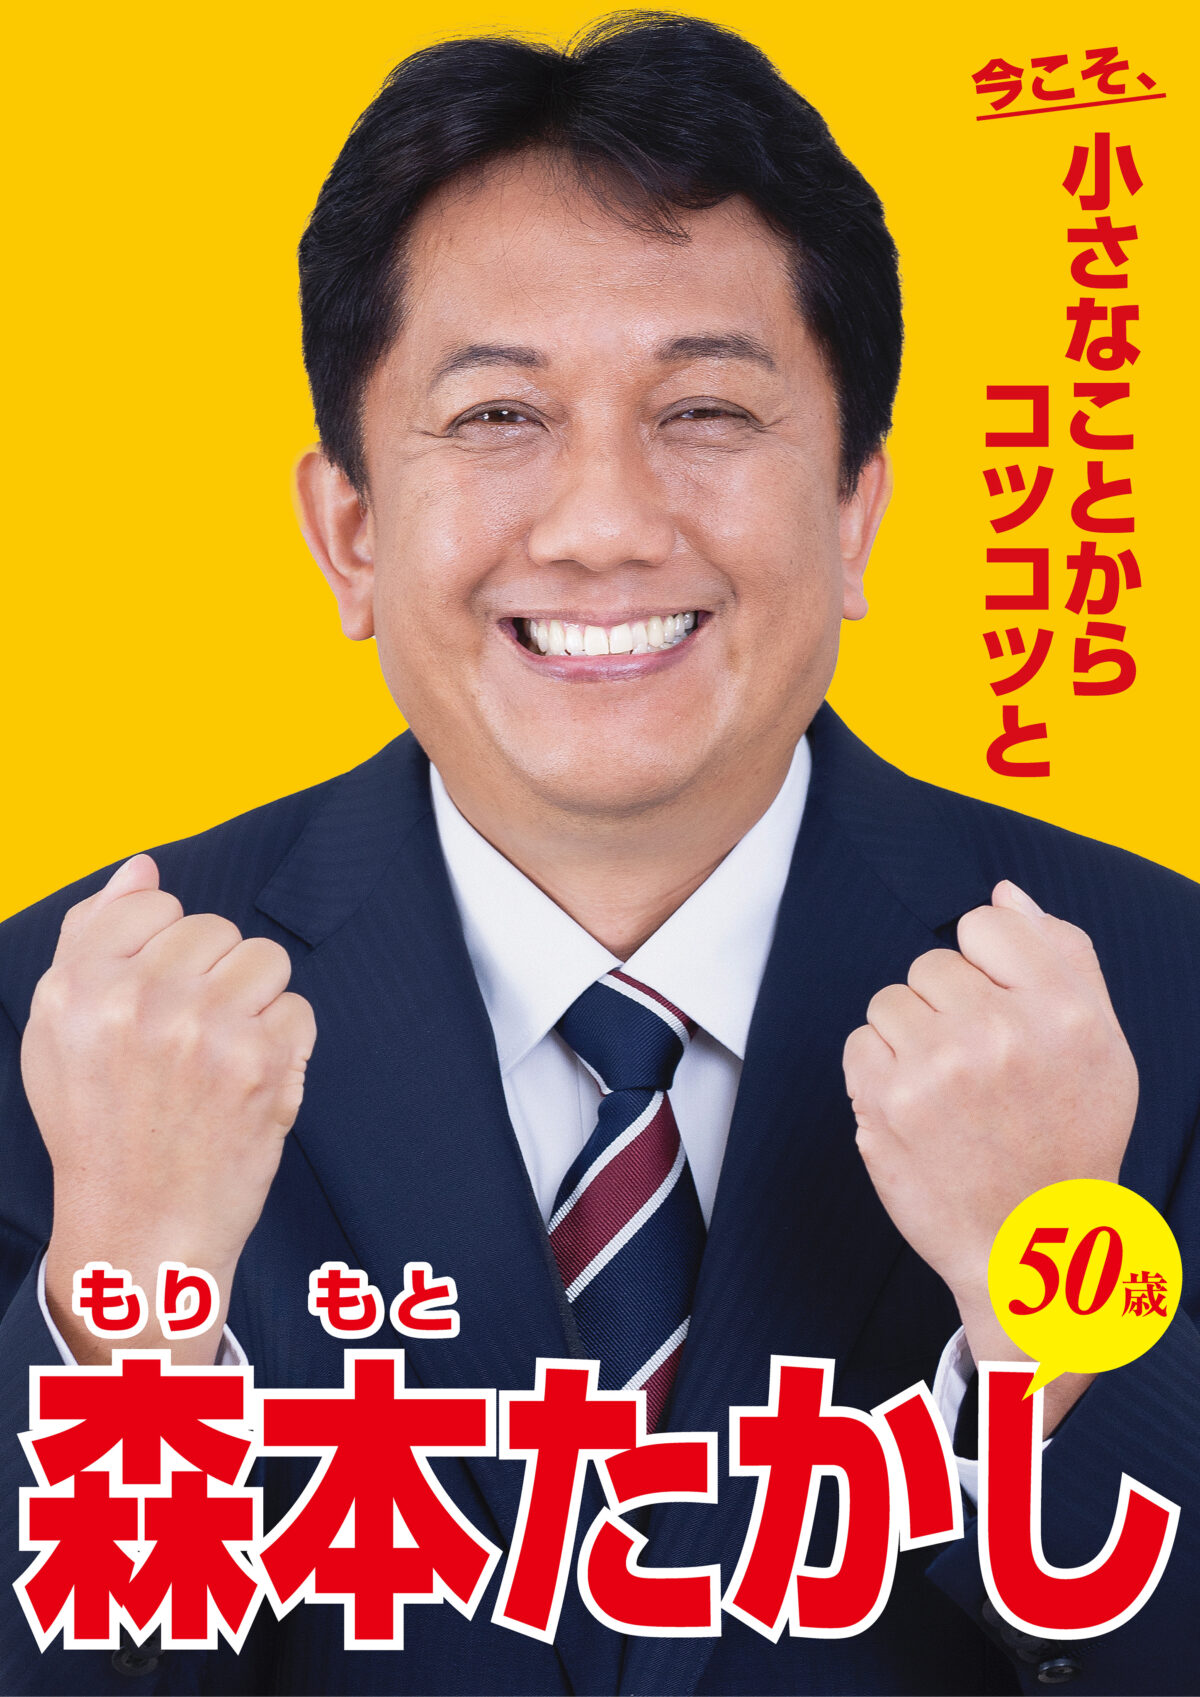 森本たかし選挙ポスター